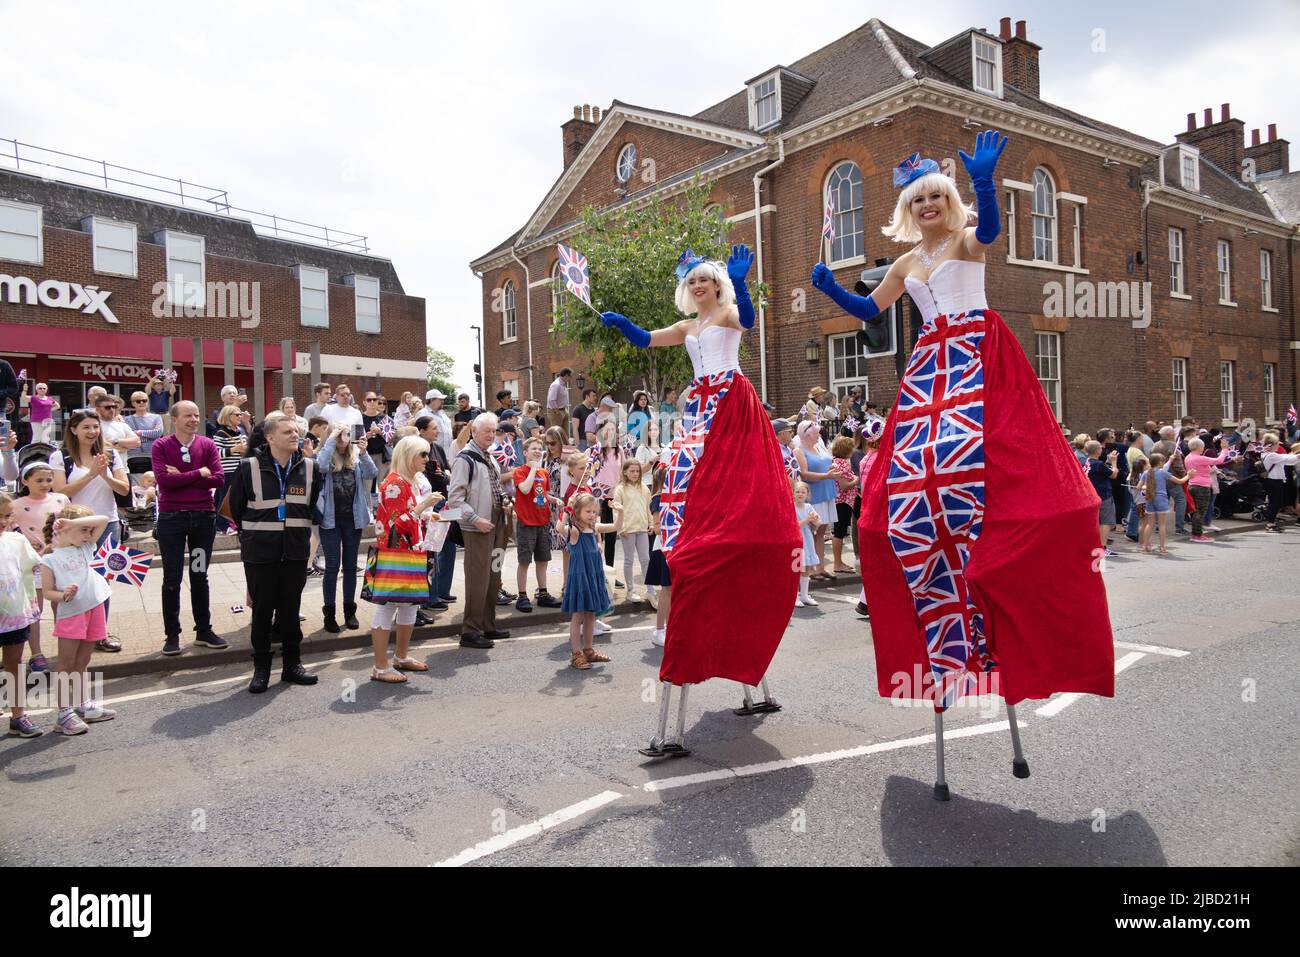 Queens Platinum Jubilee parata, camminatore di palafitte; due donne che camminano su palafitte come parte delle celebrazioni, Newmarket Suffolk UK, giugno 2022 Foto Stock